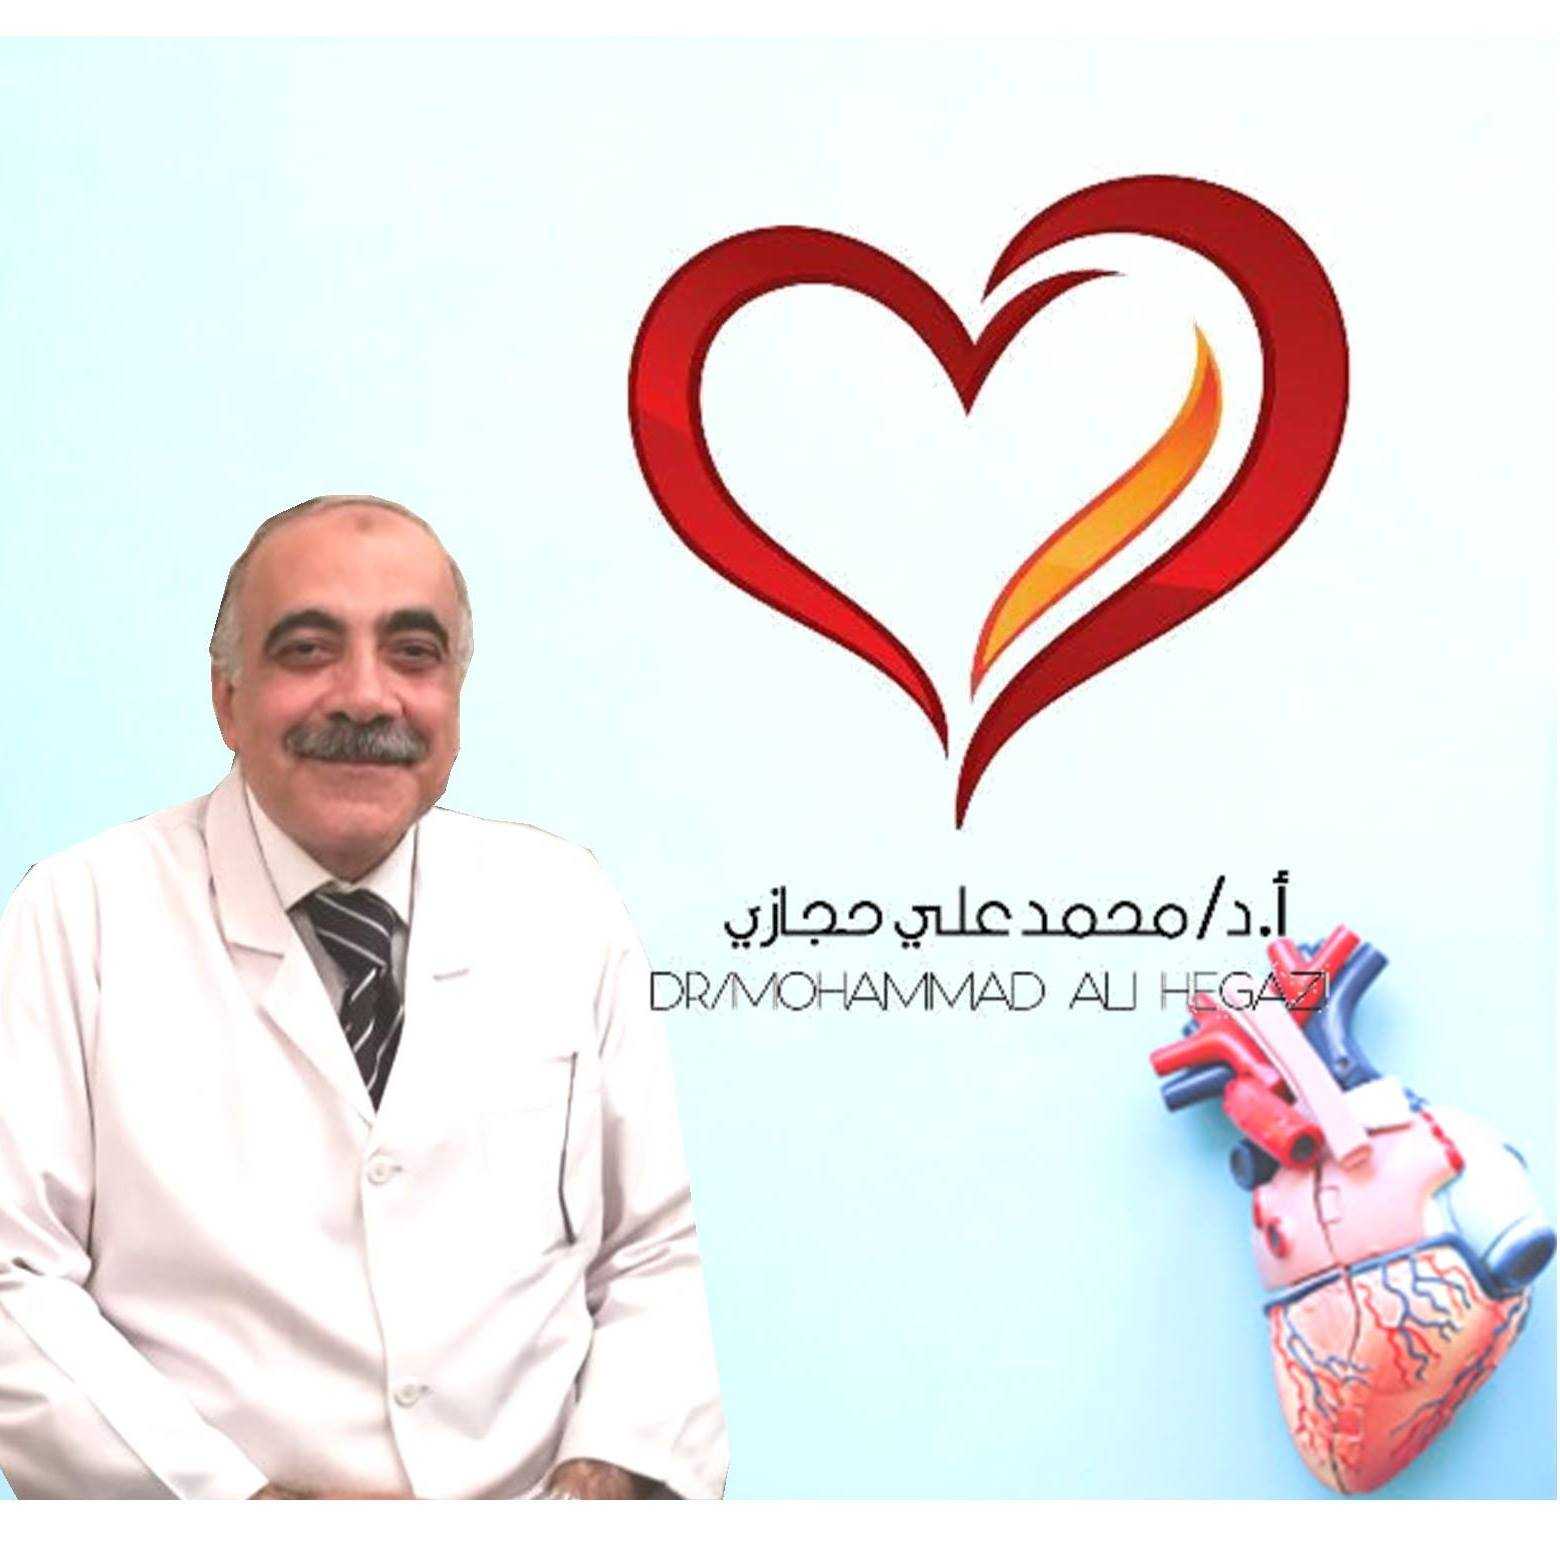 Dr. Mohamed Ali Hegazy